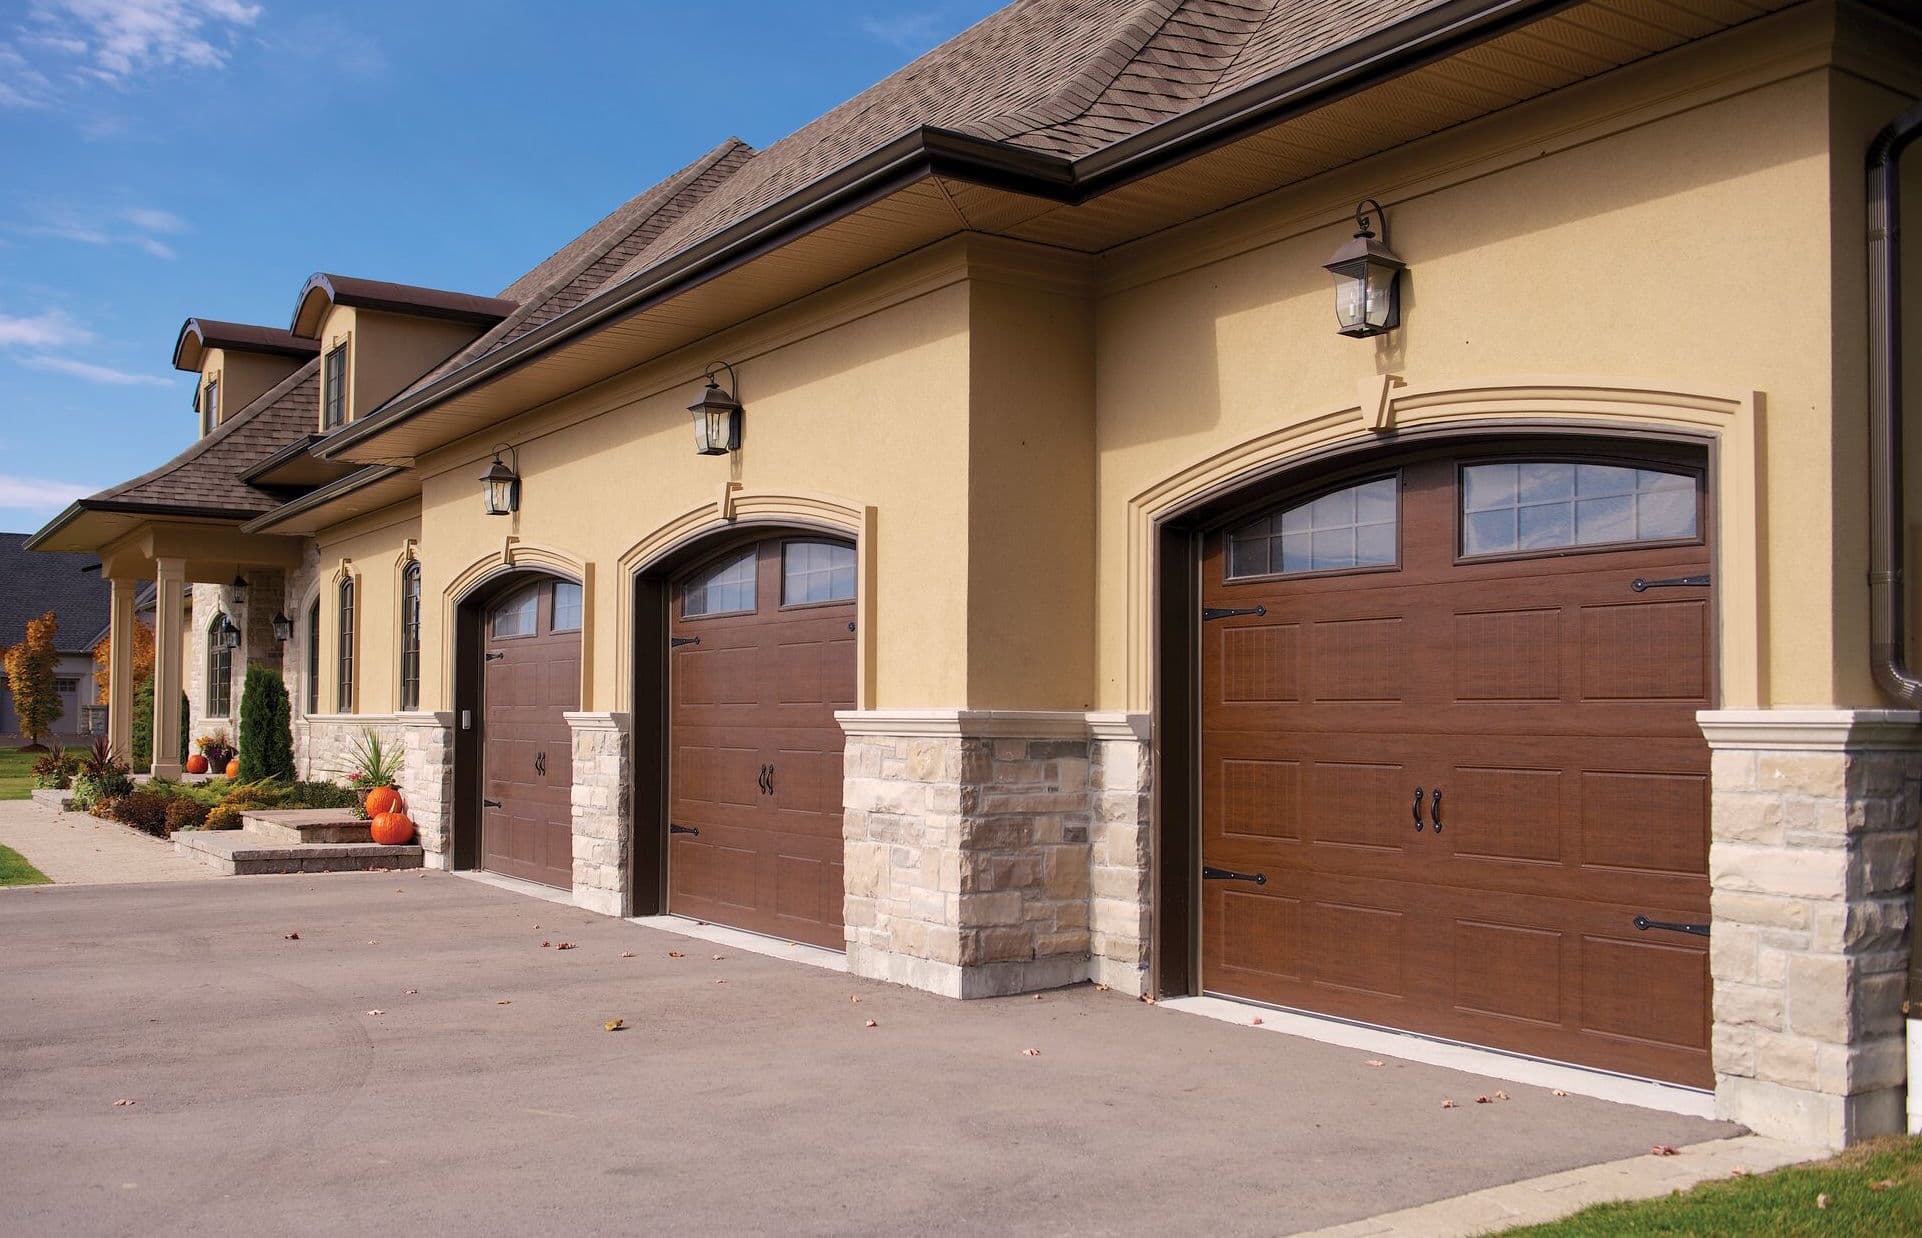 Richards-Wilcox-Grandview-garage-doors-in-Golden-Oak.jpeg?mtime=20180405090259#asset:7939